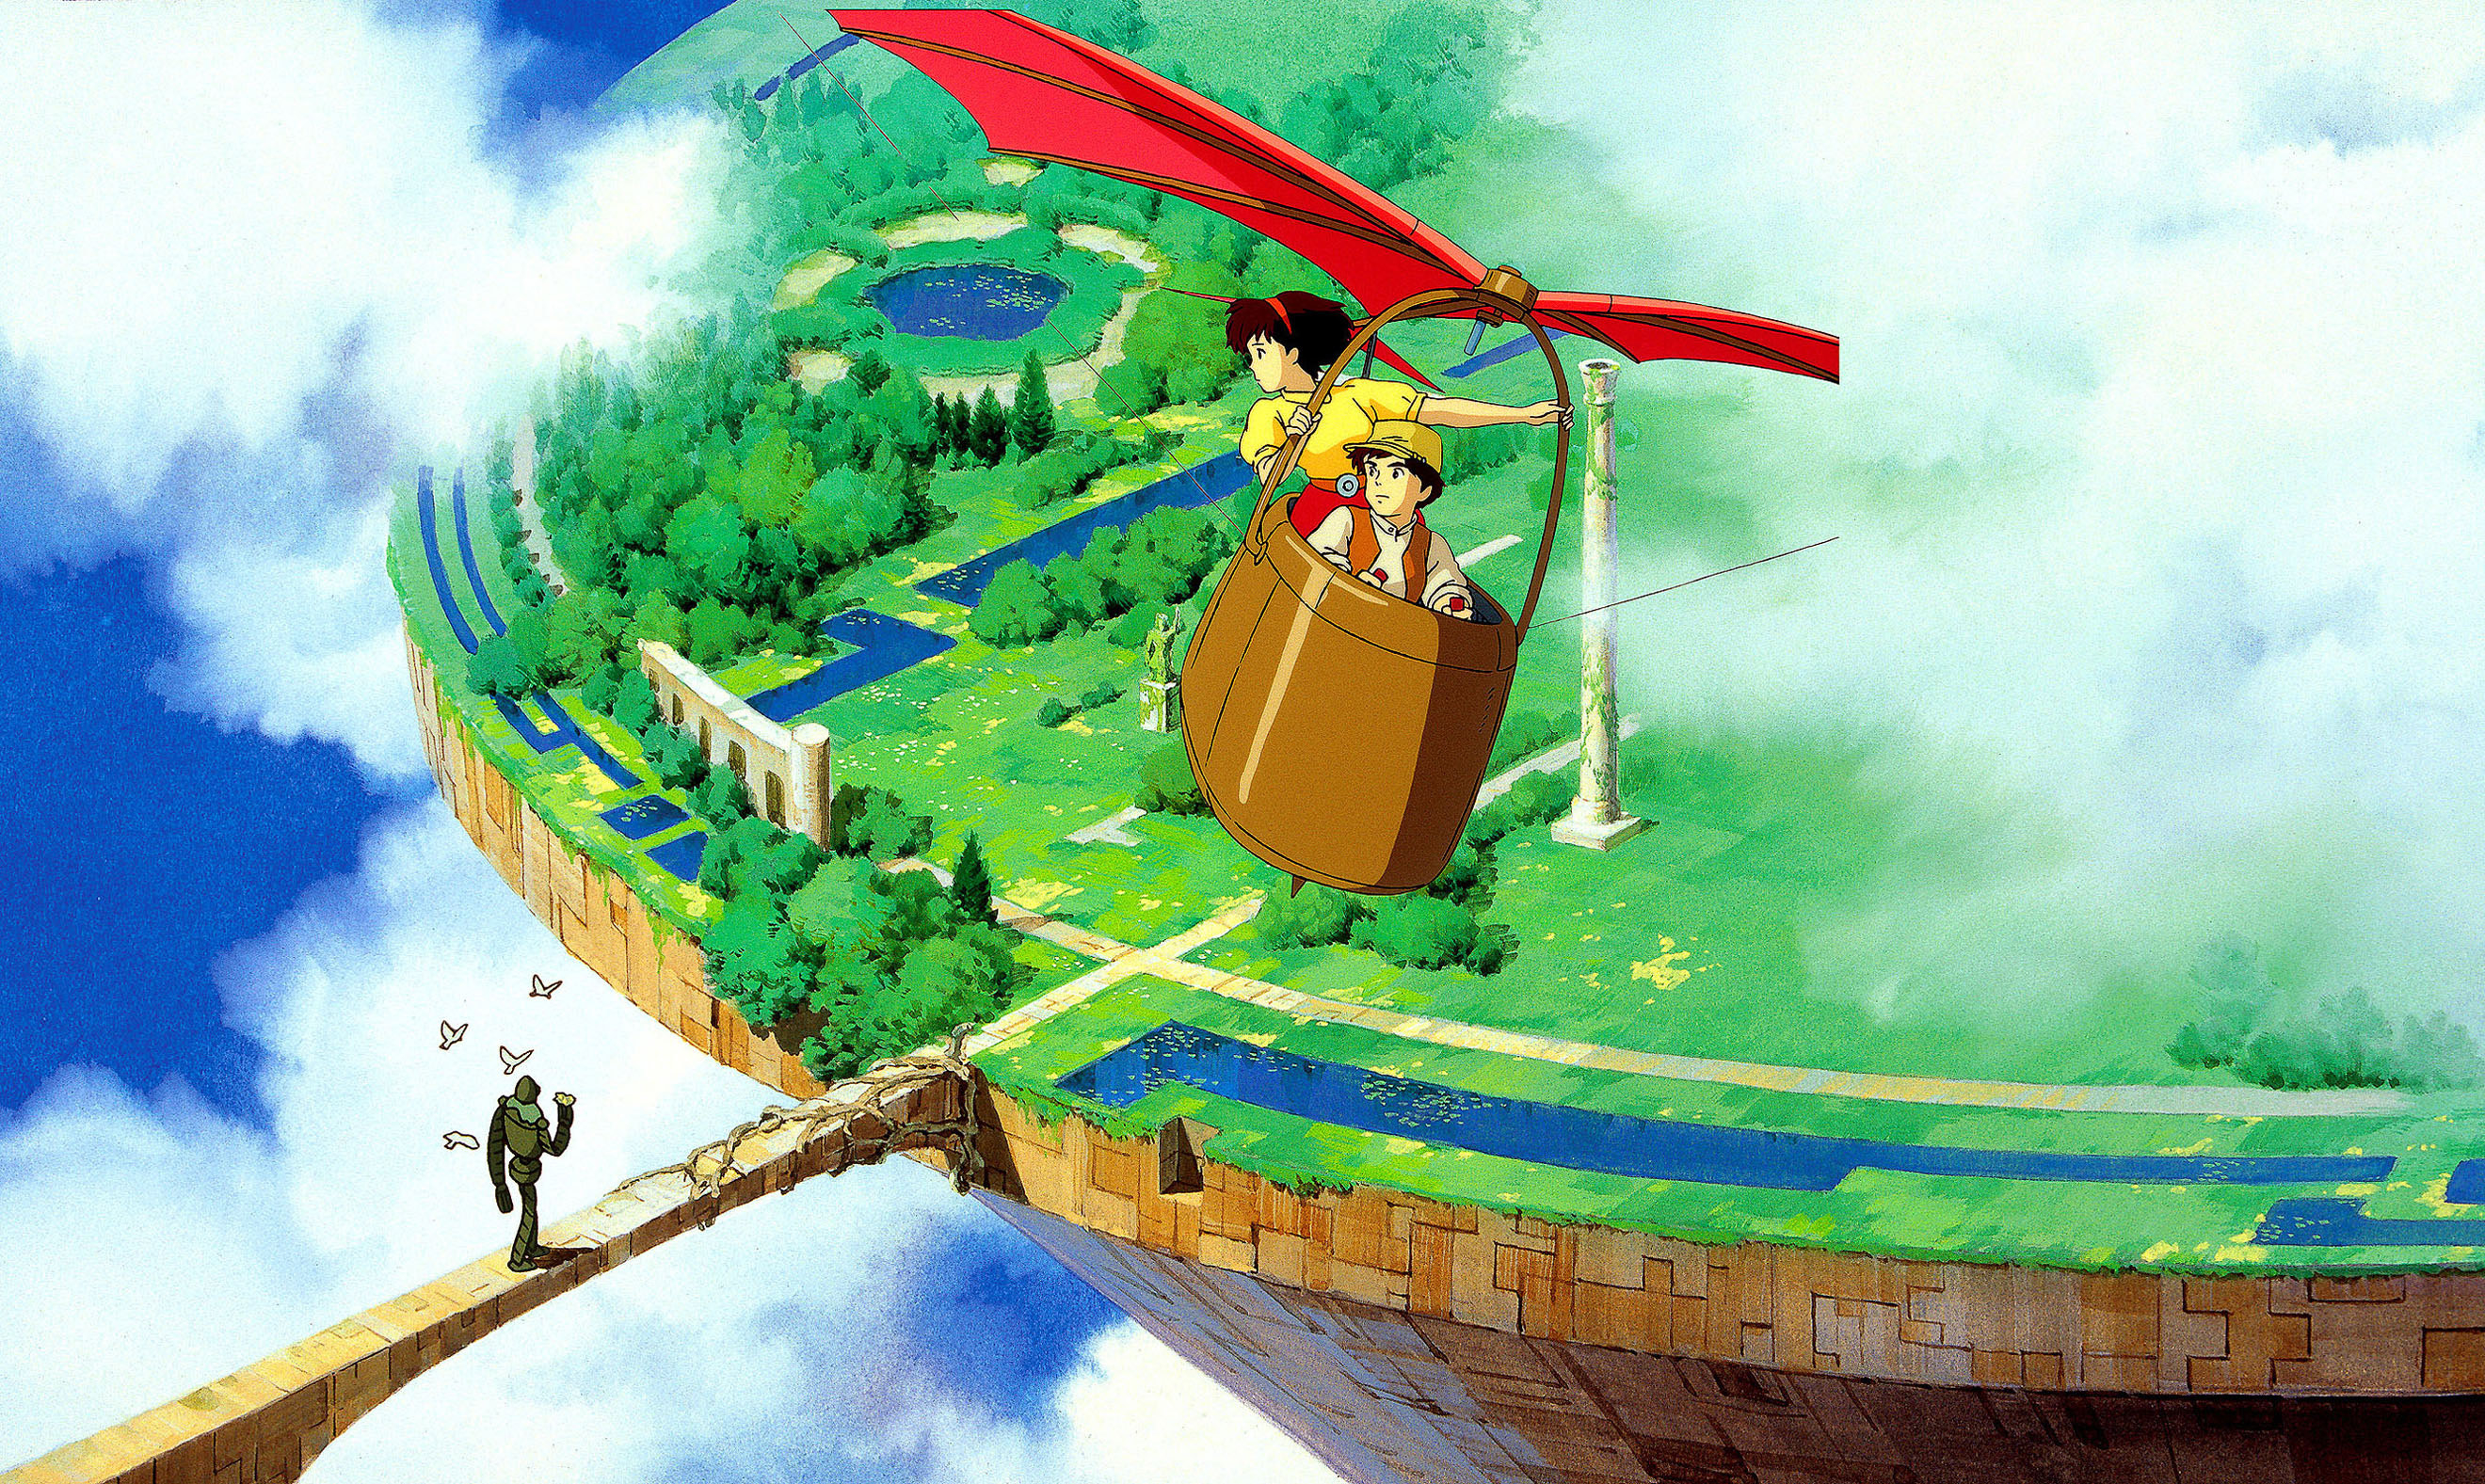 10 Best Studio Ghibli Movies Ranked By IMDb